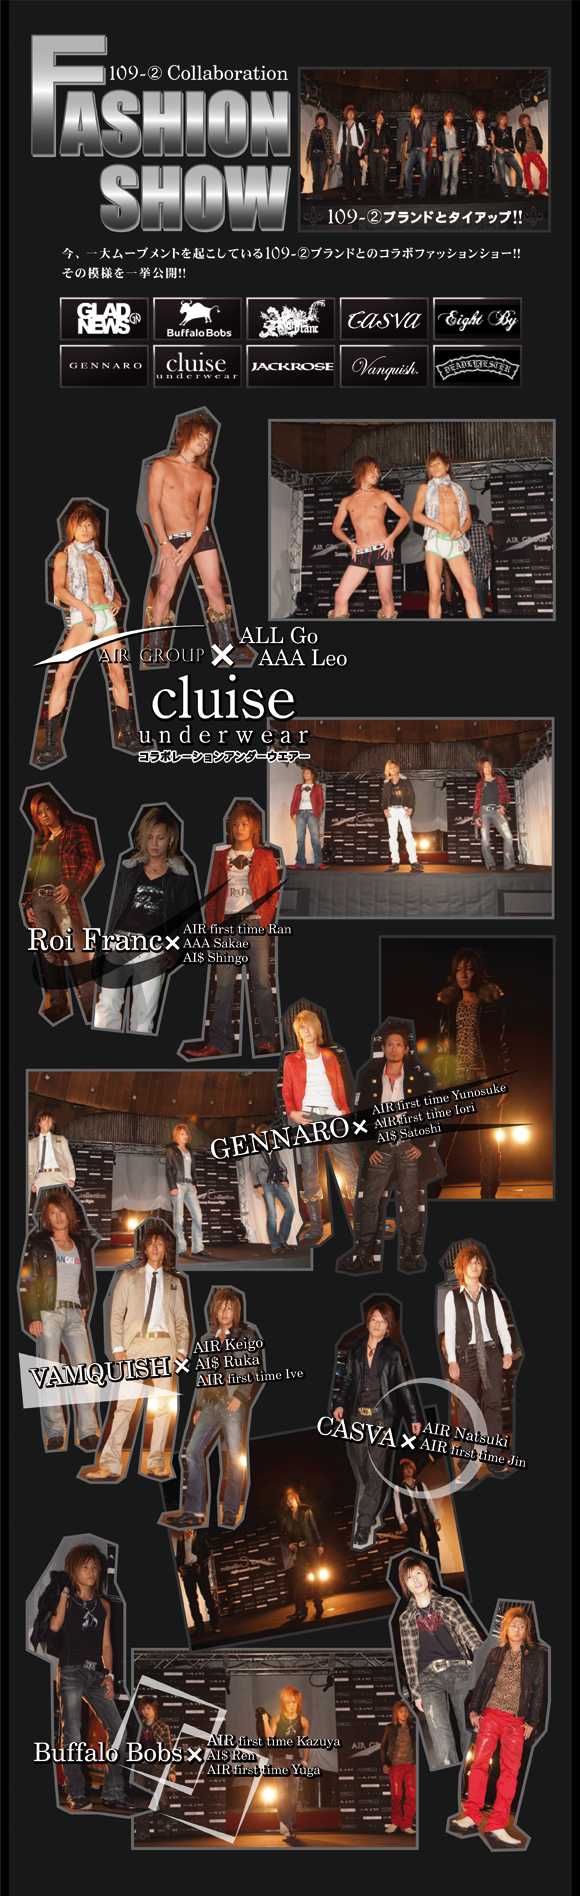 昨年夏に行われたエアーグループコレクション2007のファッションショーの模様です。